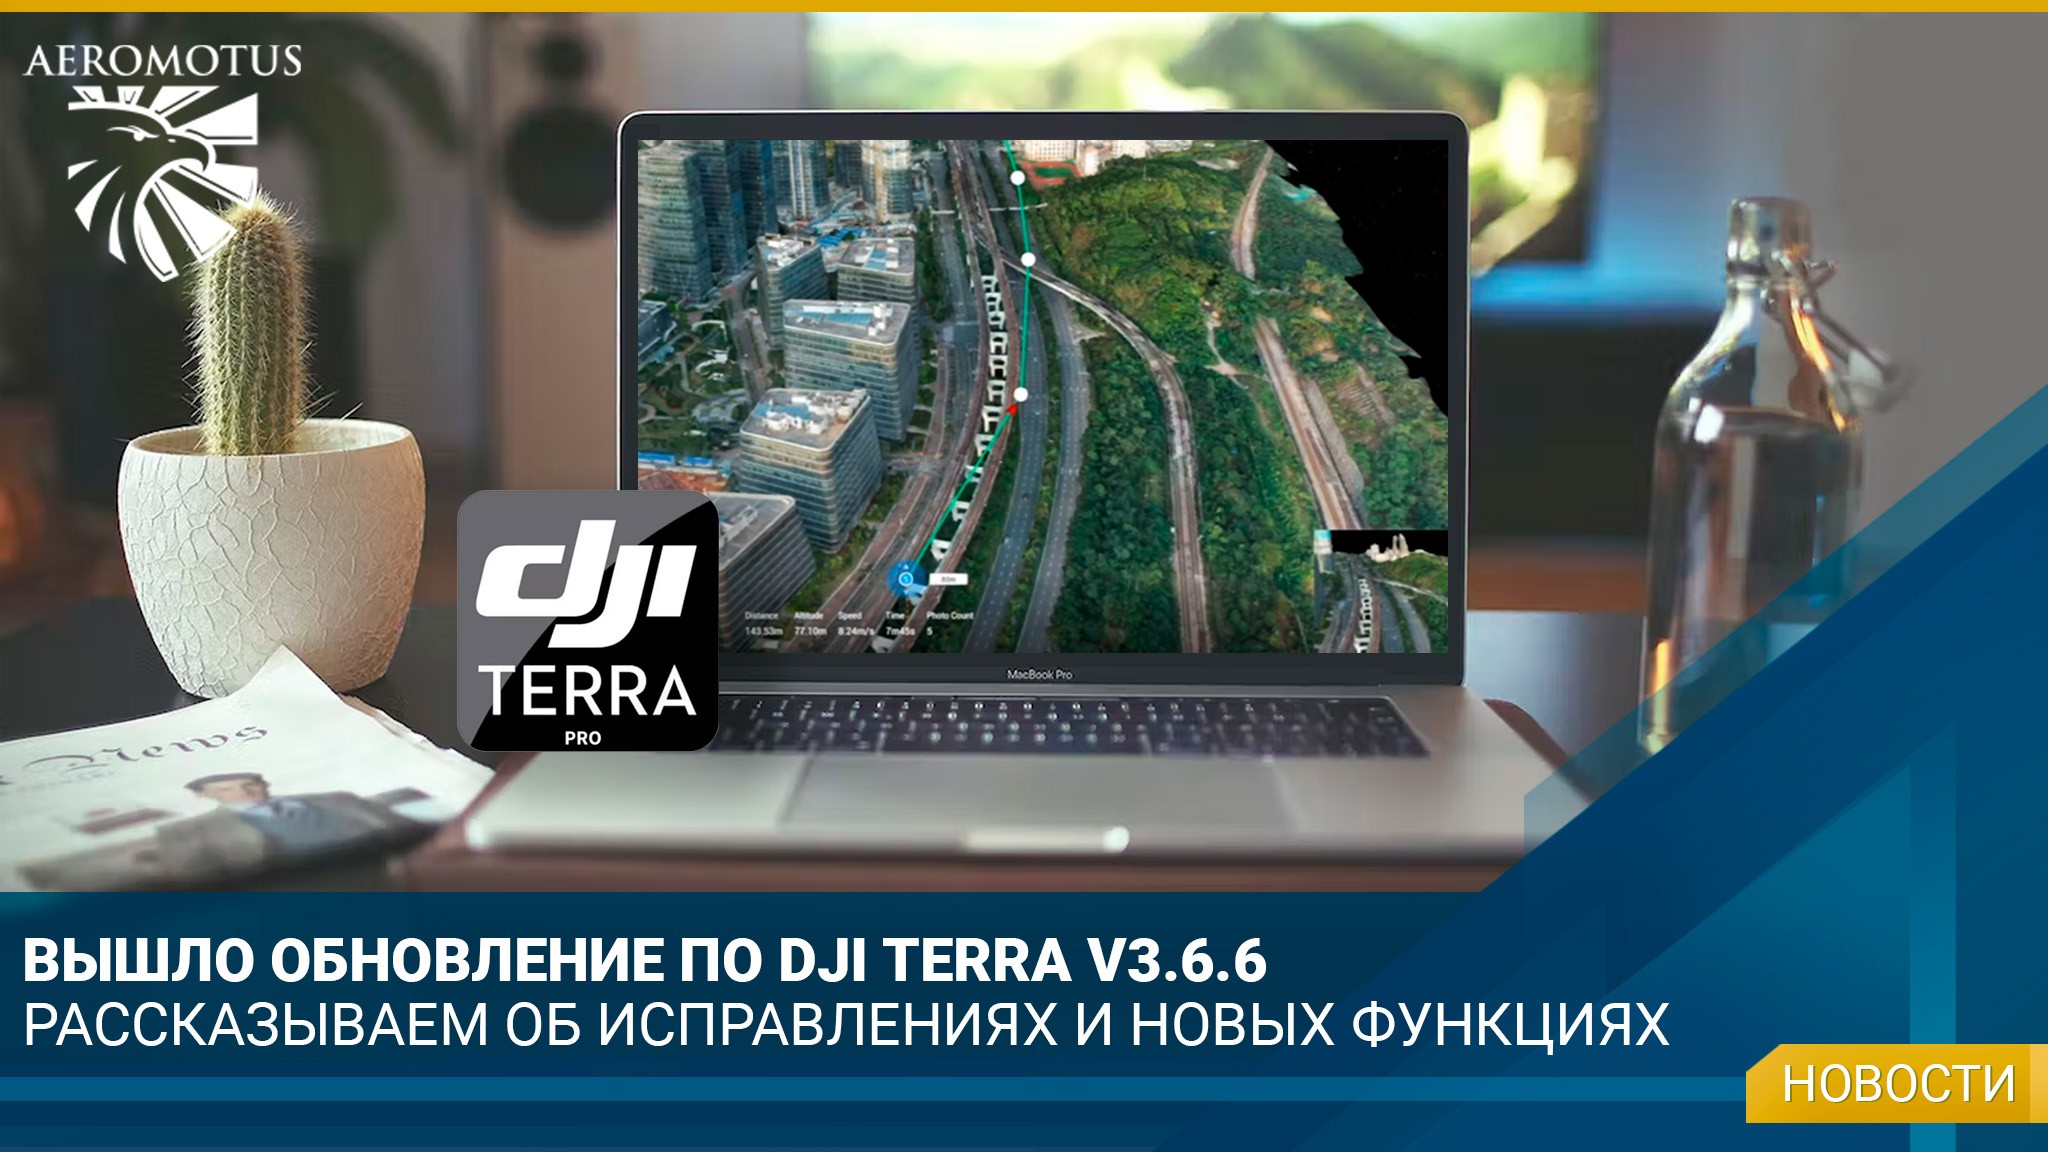 Компания DJI выпустила очередное обновление ПО DJI TERRA V3.6.6 - dji-terra